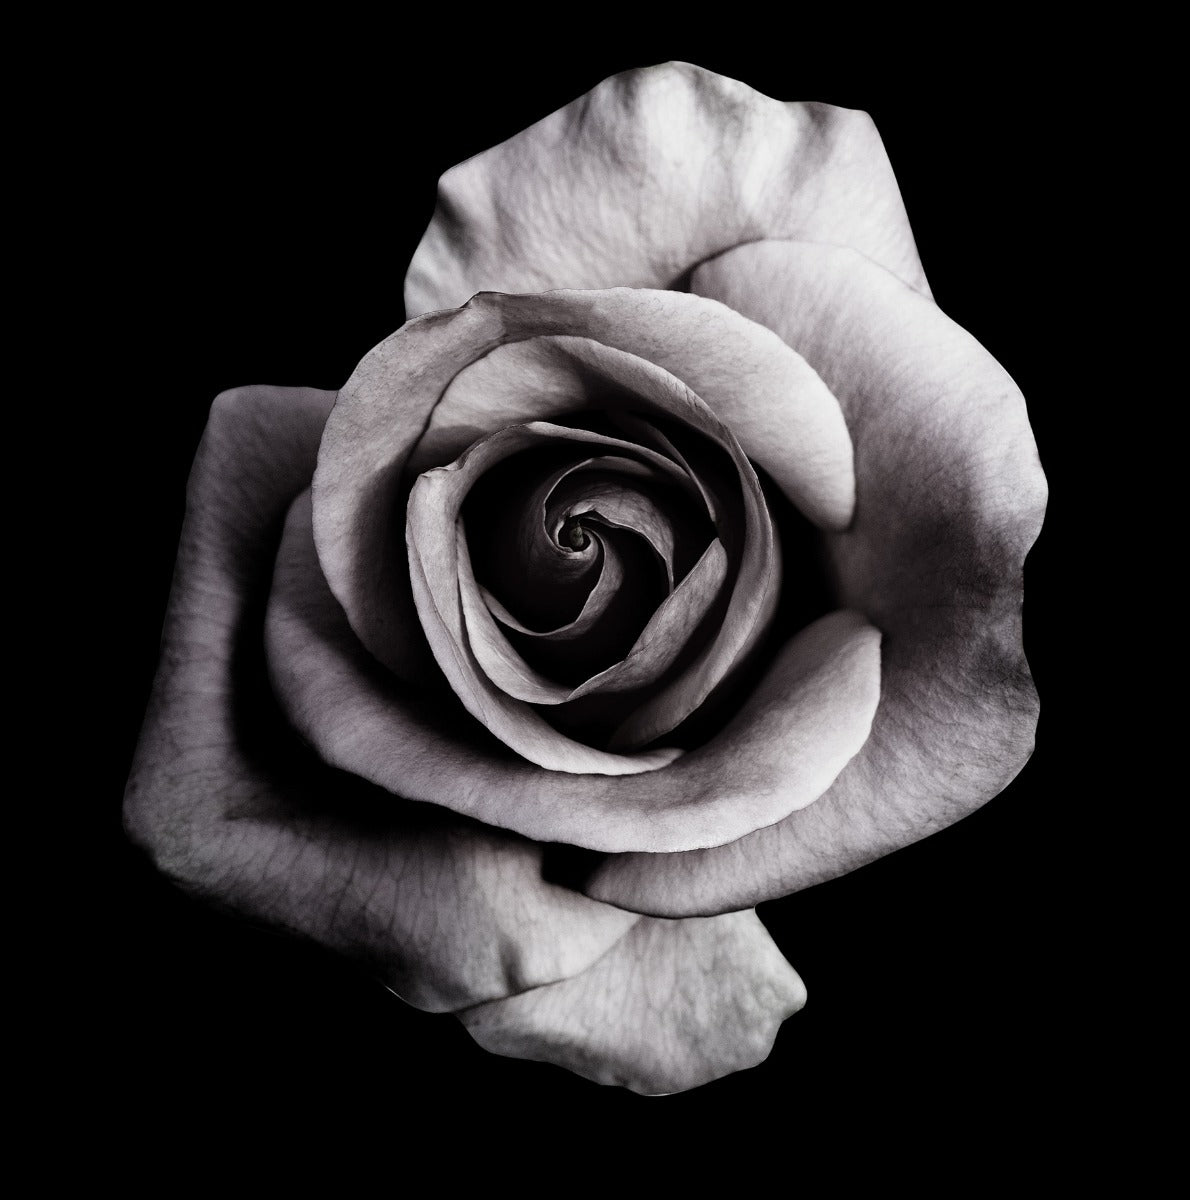  Rose auf schwarzem Plakat